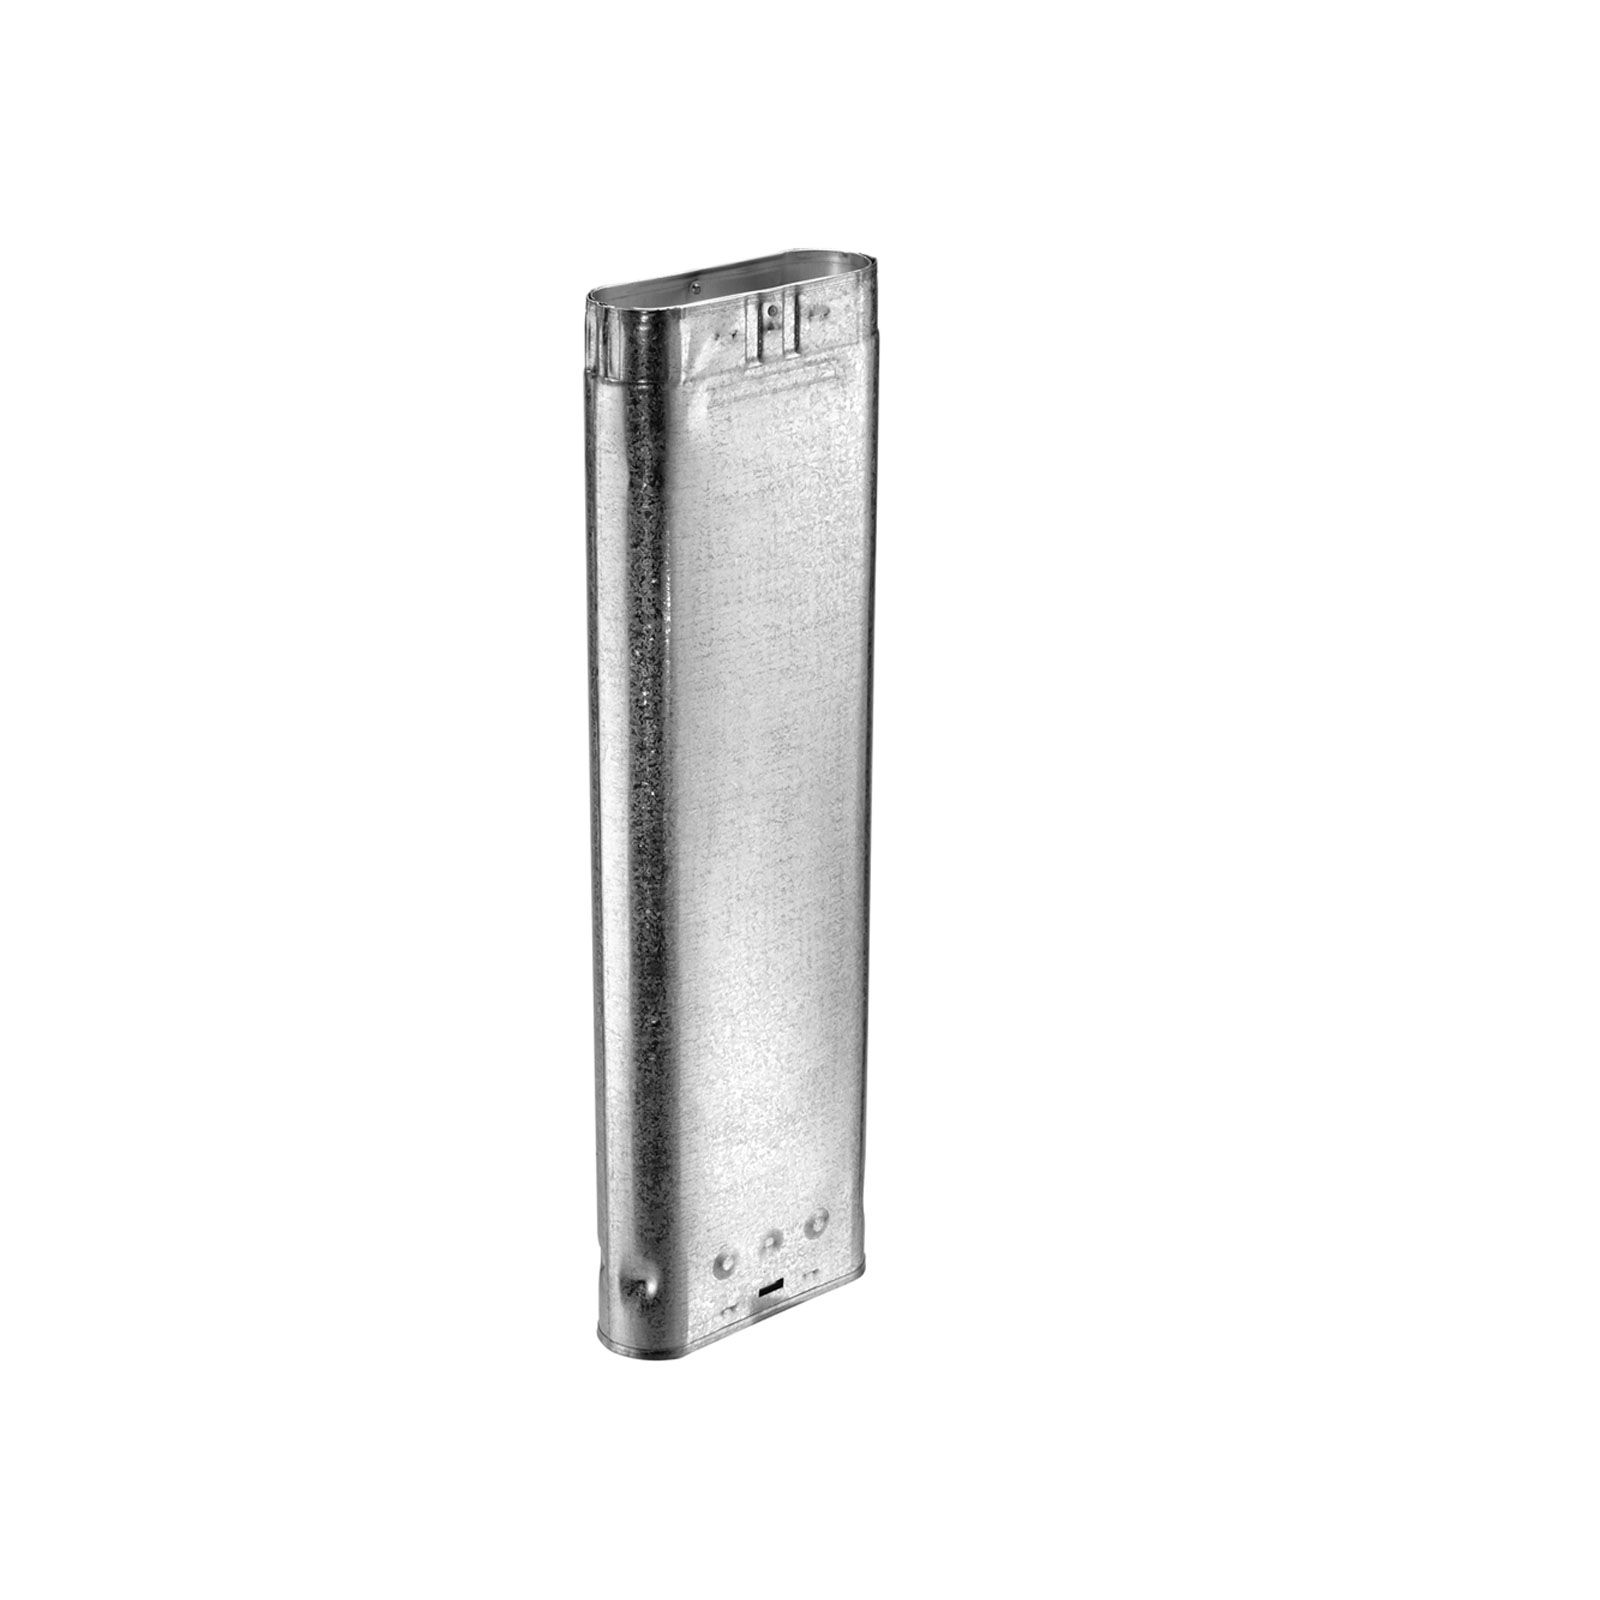 DuraVent 4GW24 - Aluminum 24" Length Oval Rigid Pipe with 4" Inner Diameter